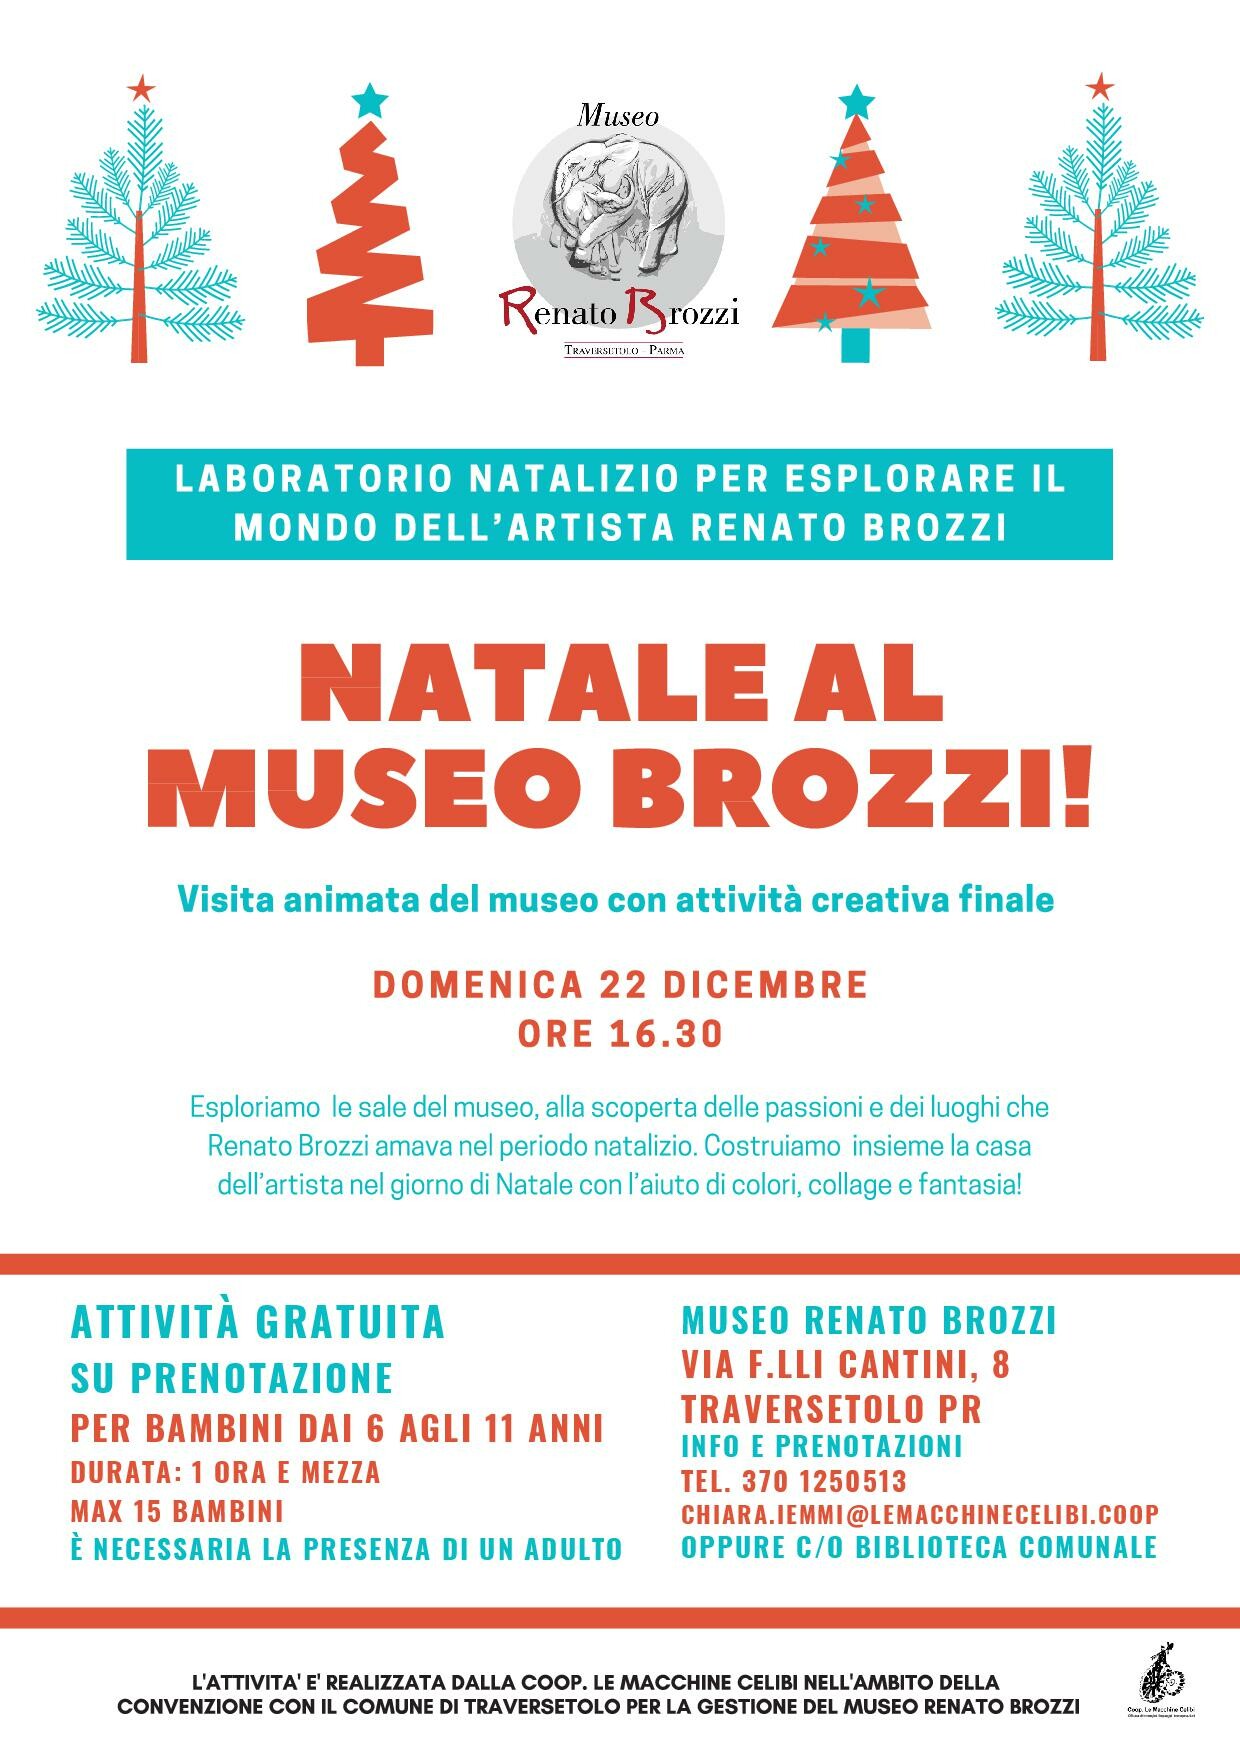 Natale al museo Brozzi: visita e laboratorio per bambini 6/11 anni